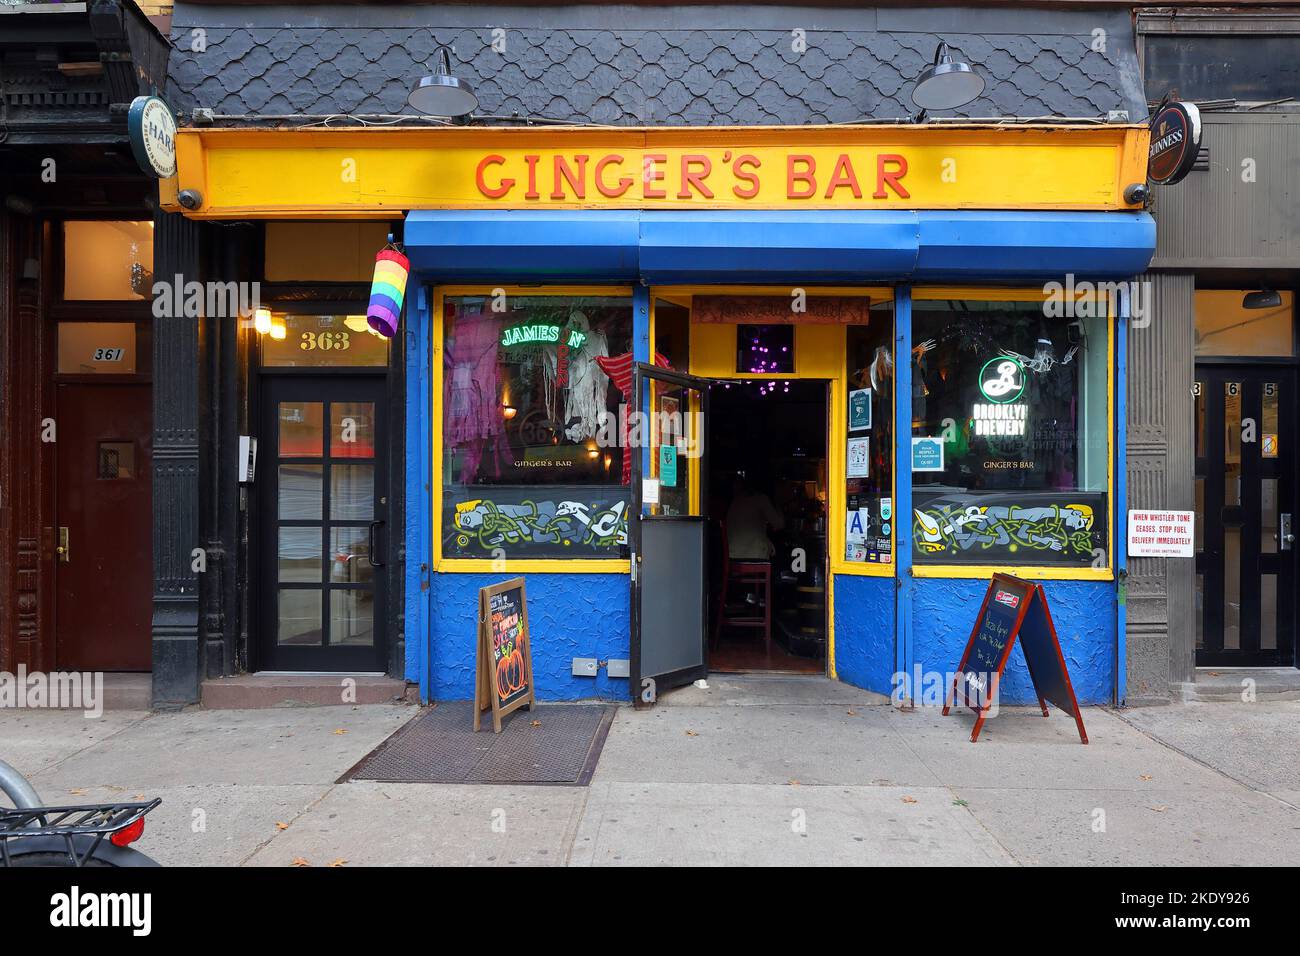 Ginger's Bar, 363 5. Ave, Brooklyn, New York, NYC Schaufensterfoto einer lesbisch freundlichen Bar in der Nachbarschaft in Park Slope Stockfoto